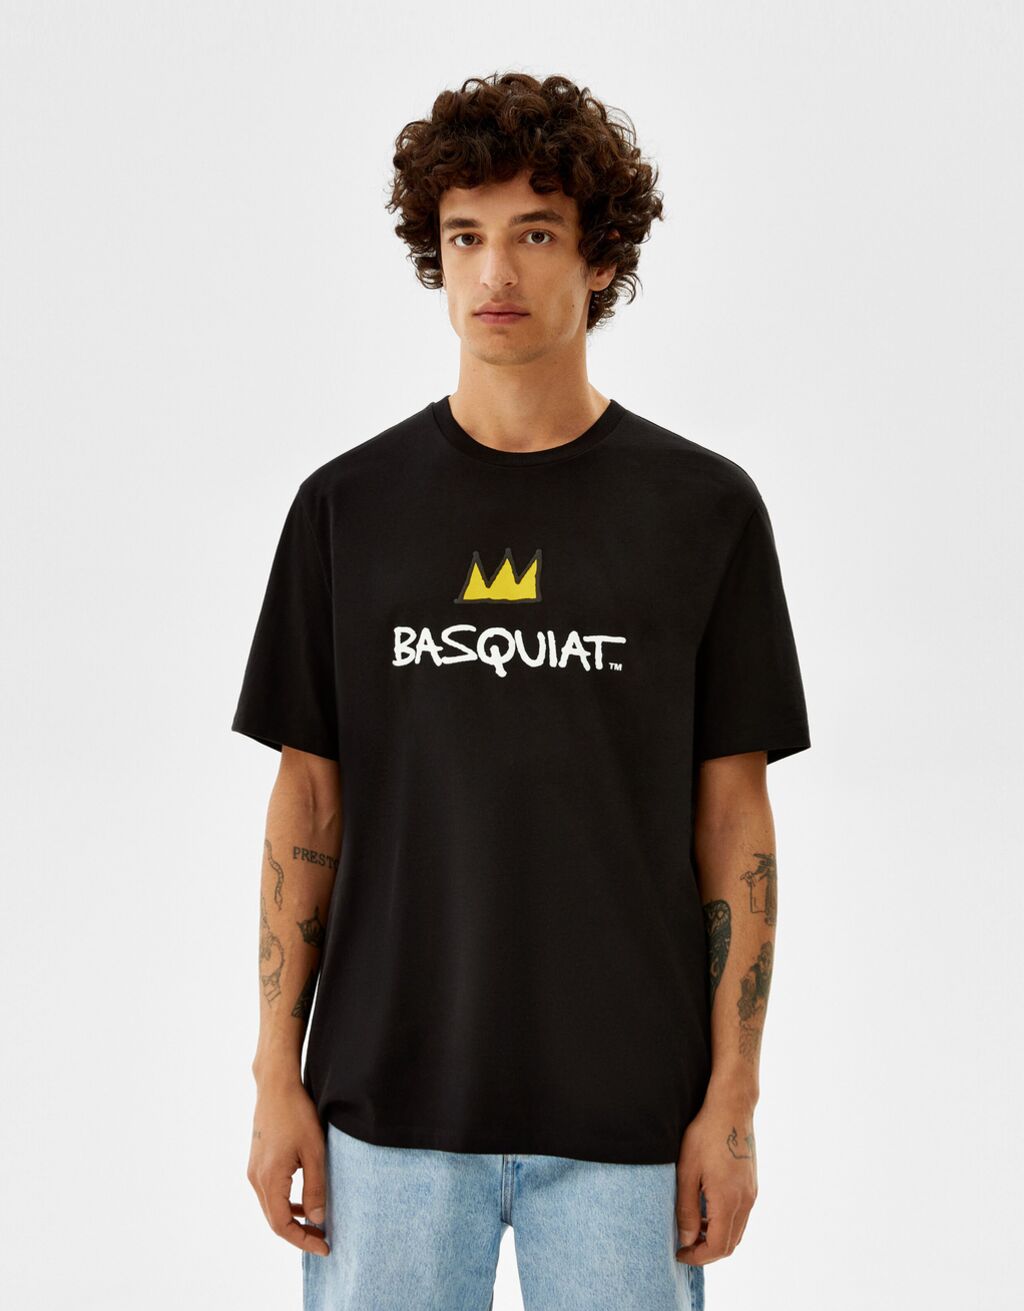 טי שירט Regular fit עם שרוולים קצרים והדפס Jean-Michel Basquiat